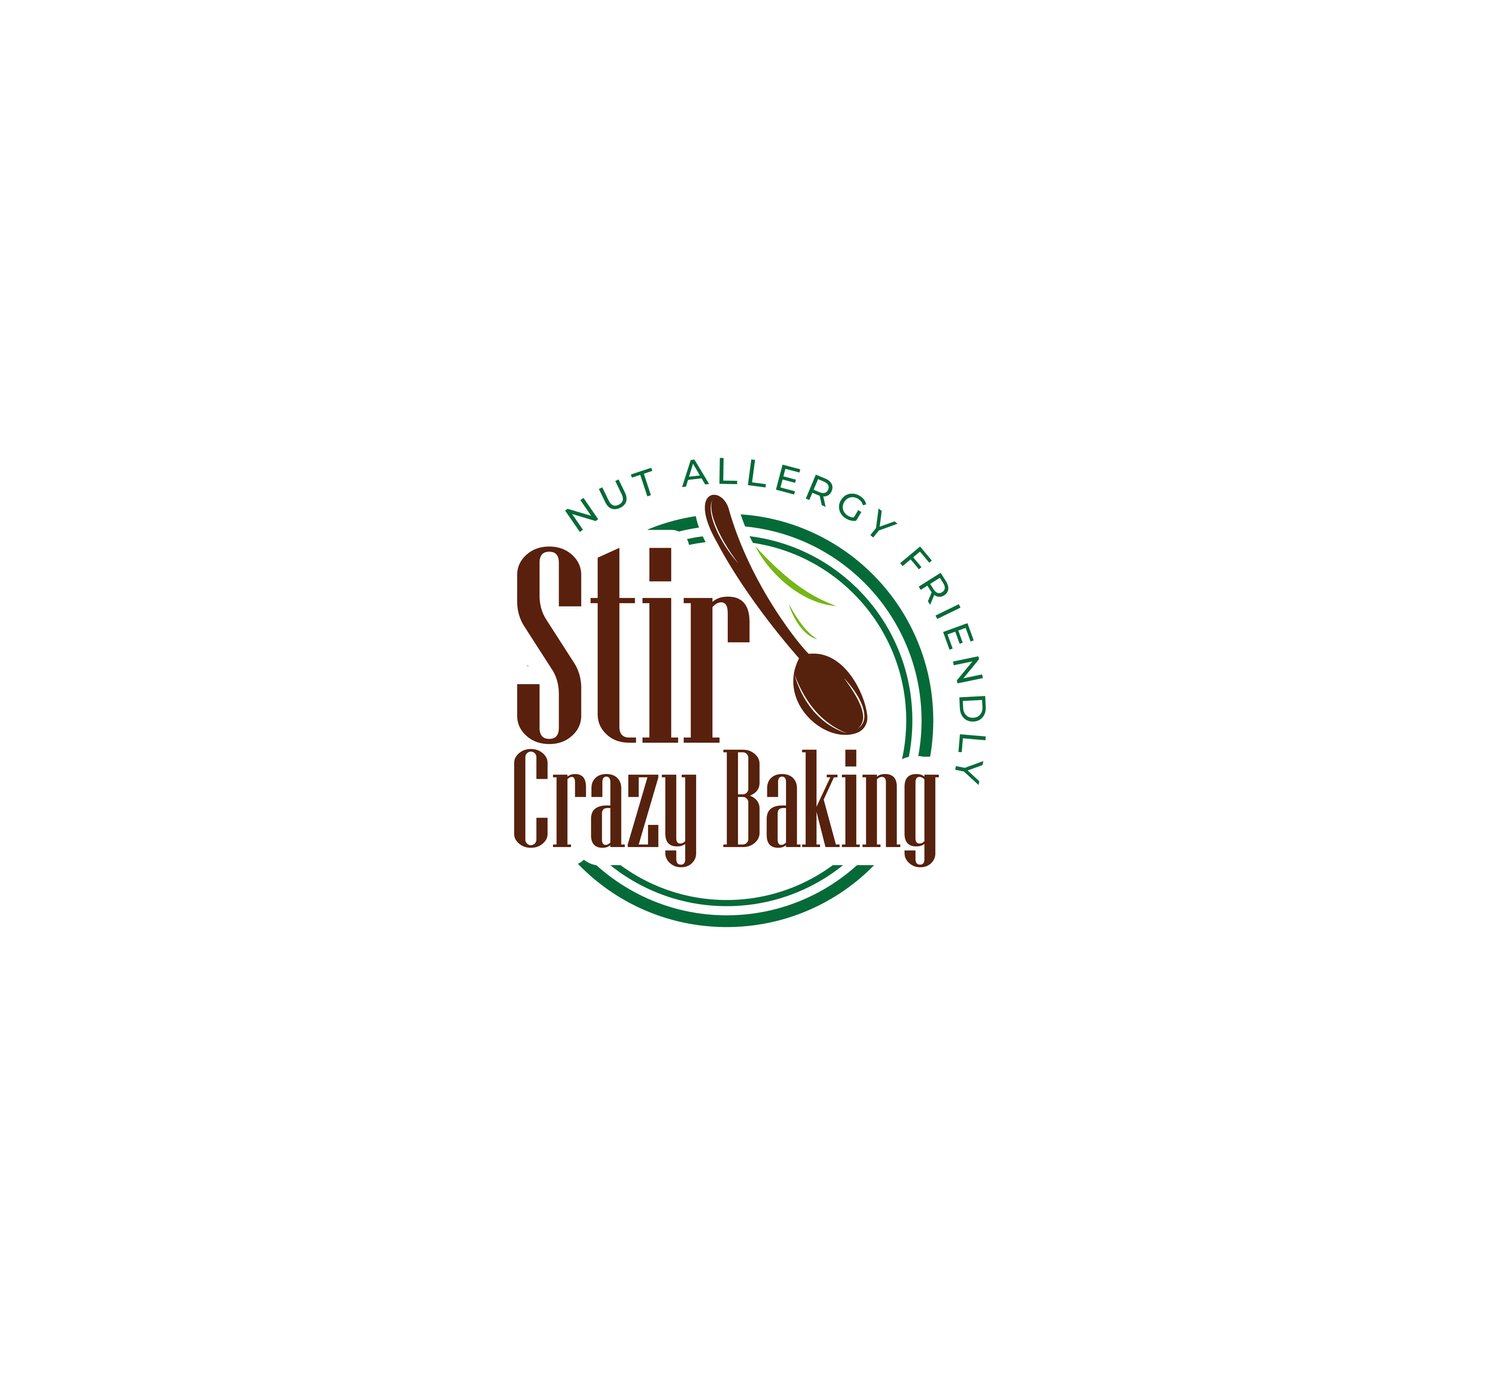 Stir Crazy Baking